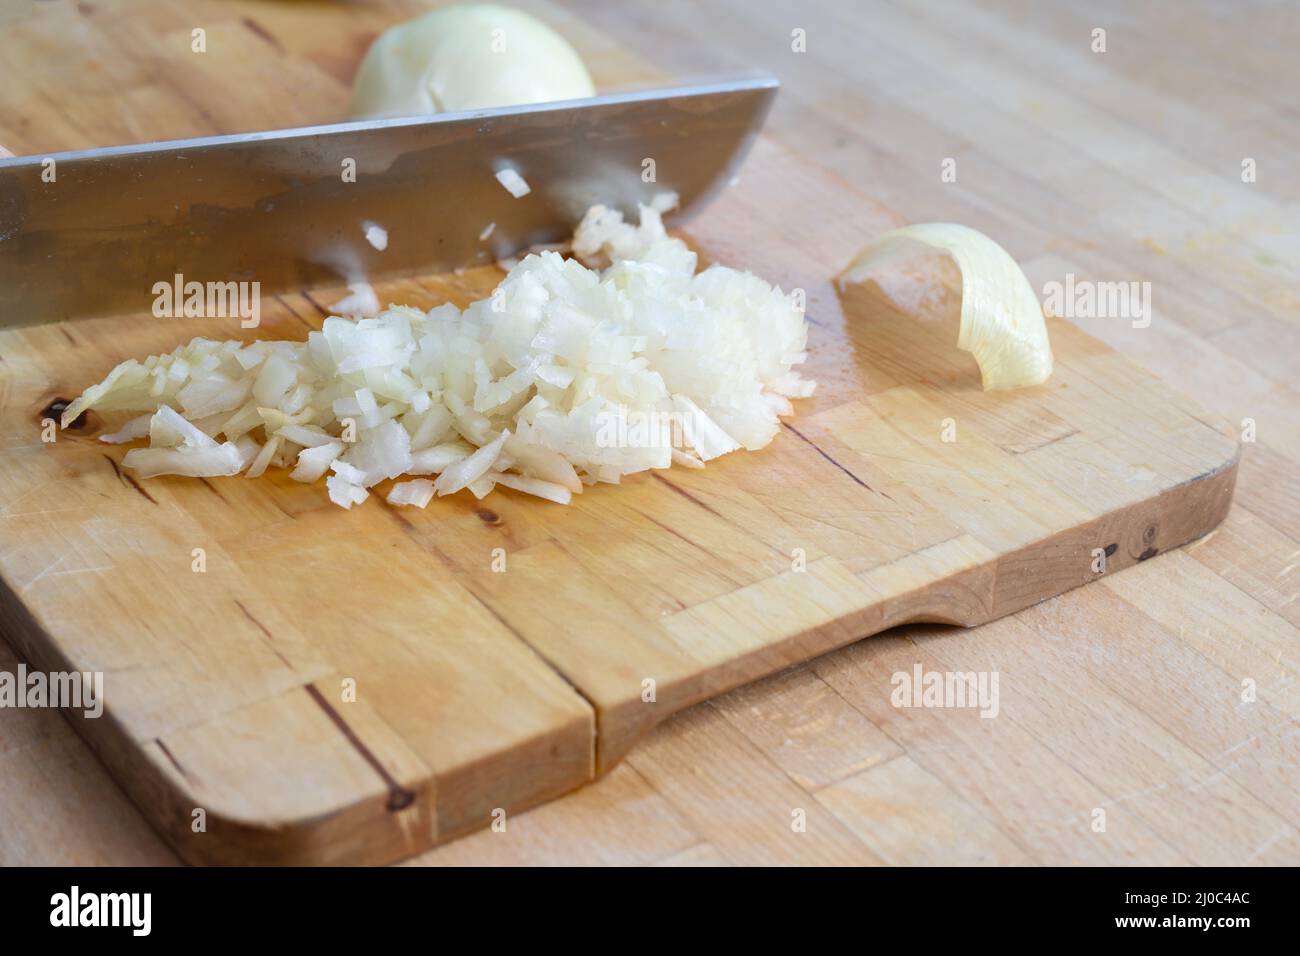 La grande lama da cucina taglia le cipolle in piccoli cubetti su